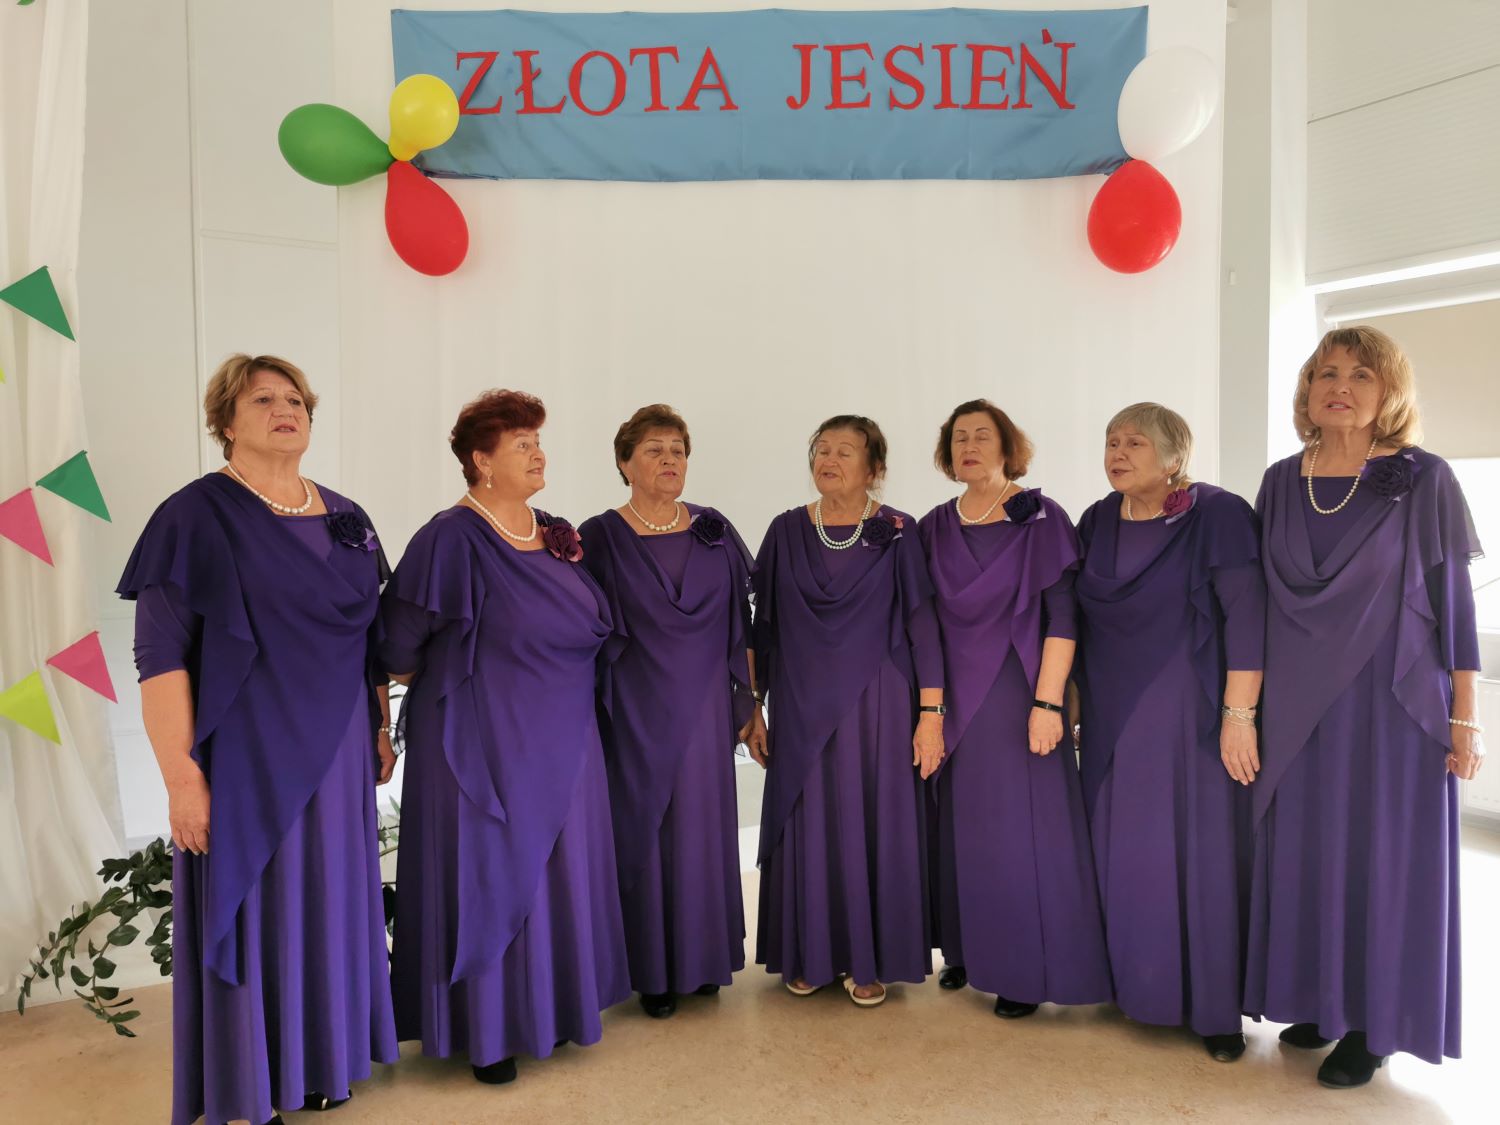 Śpiewające kobiety w fioletowych strojach.